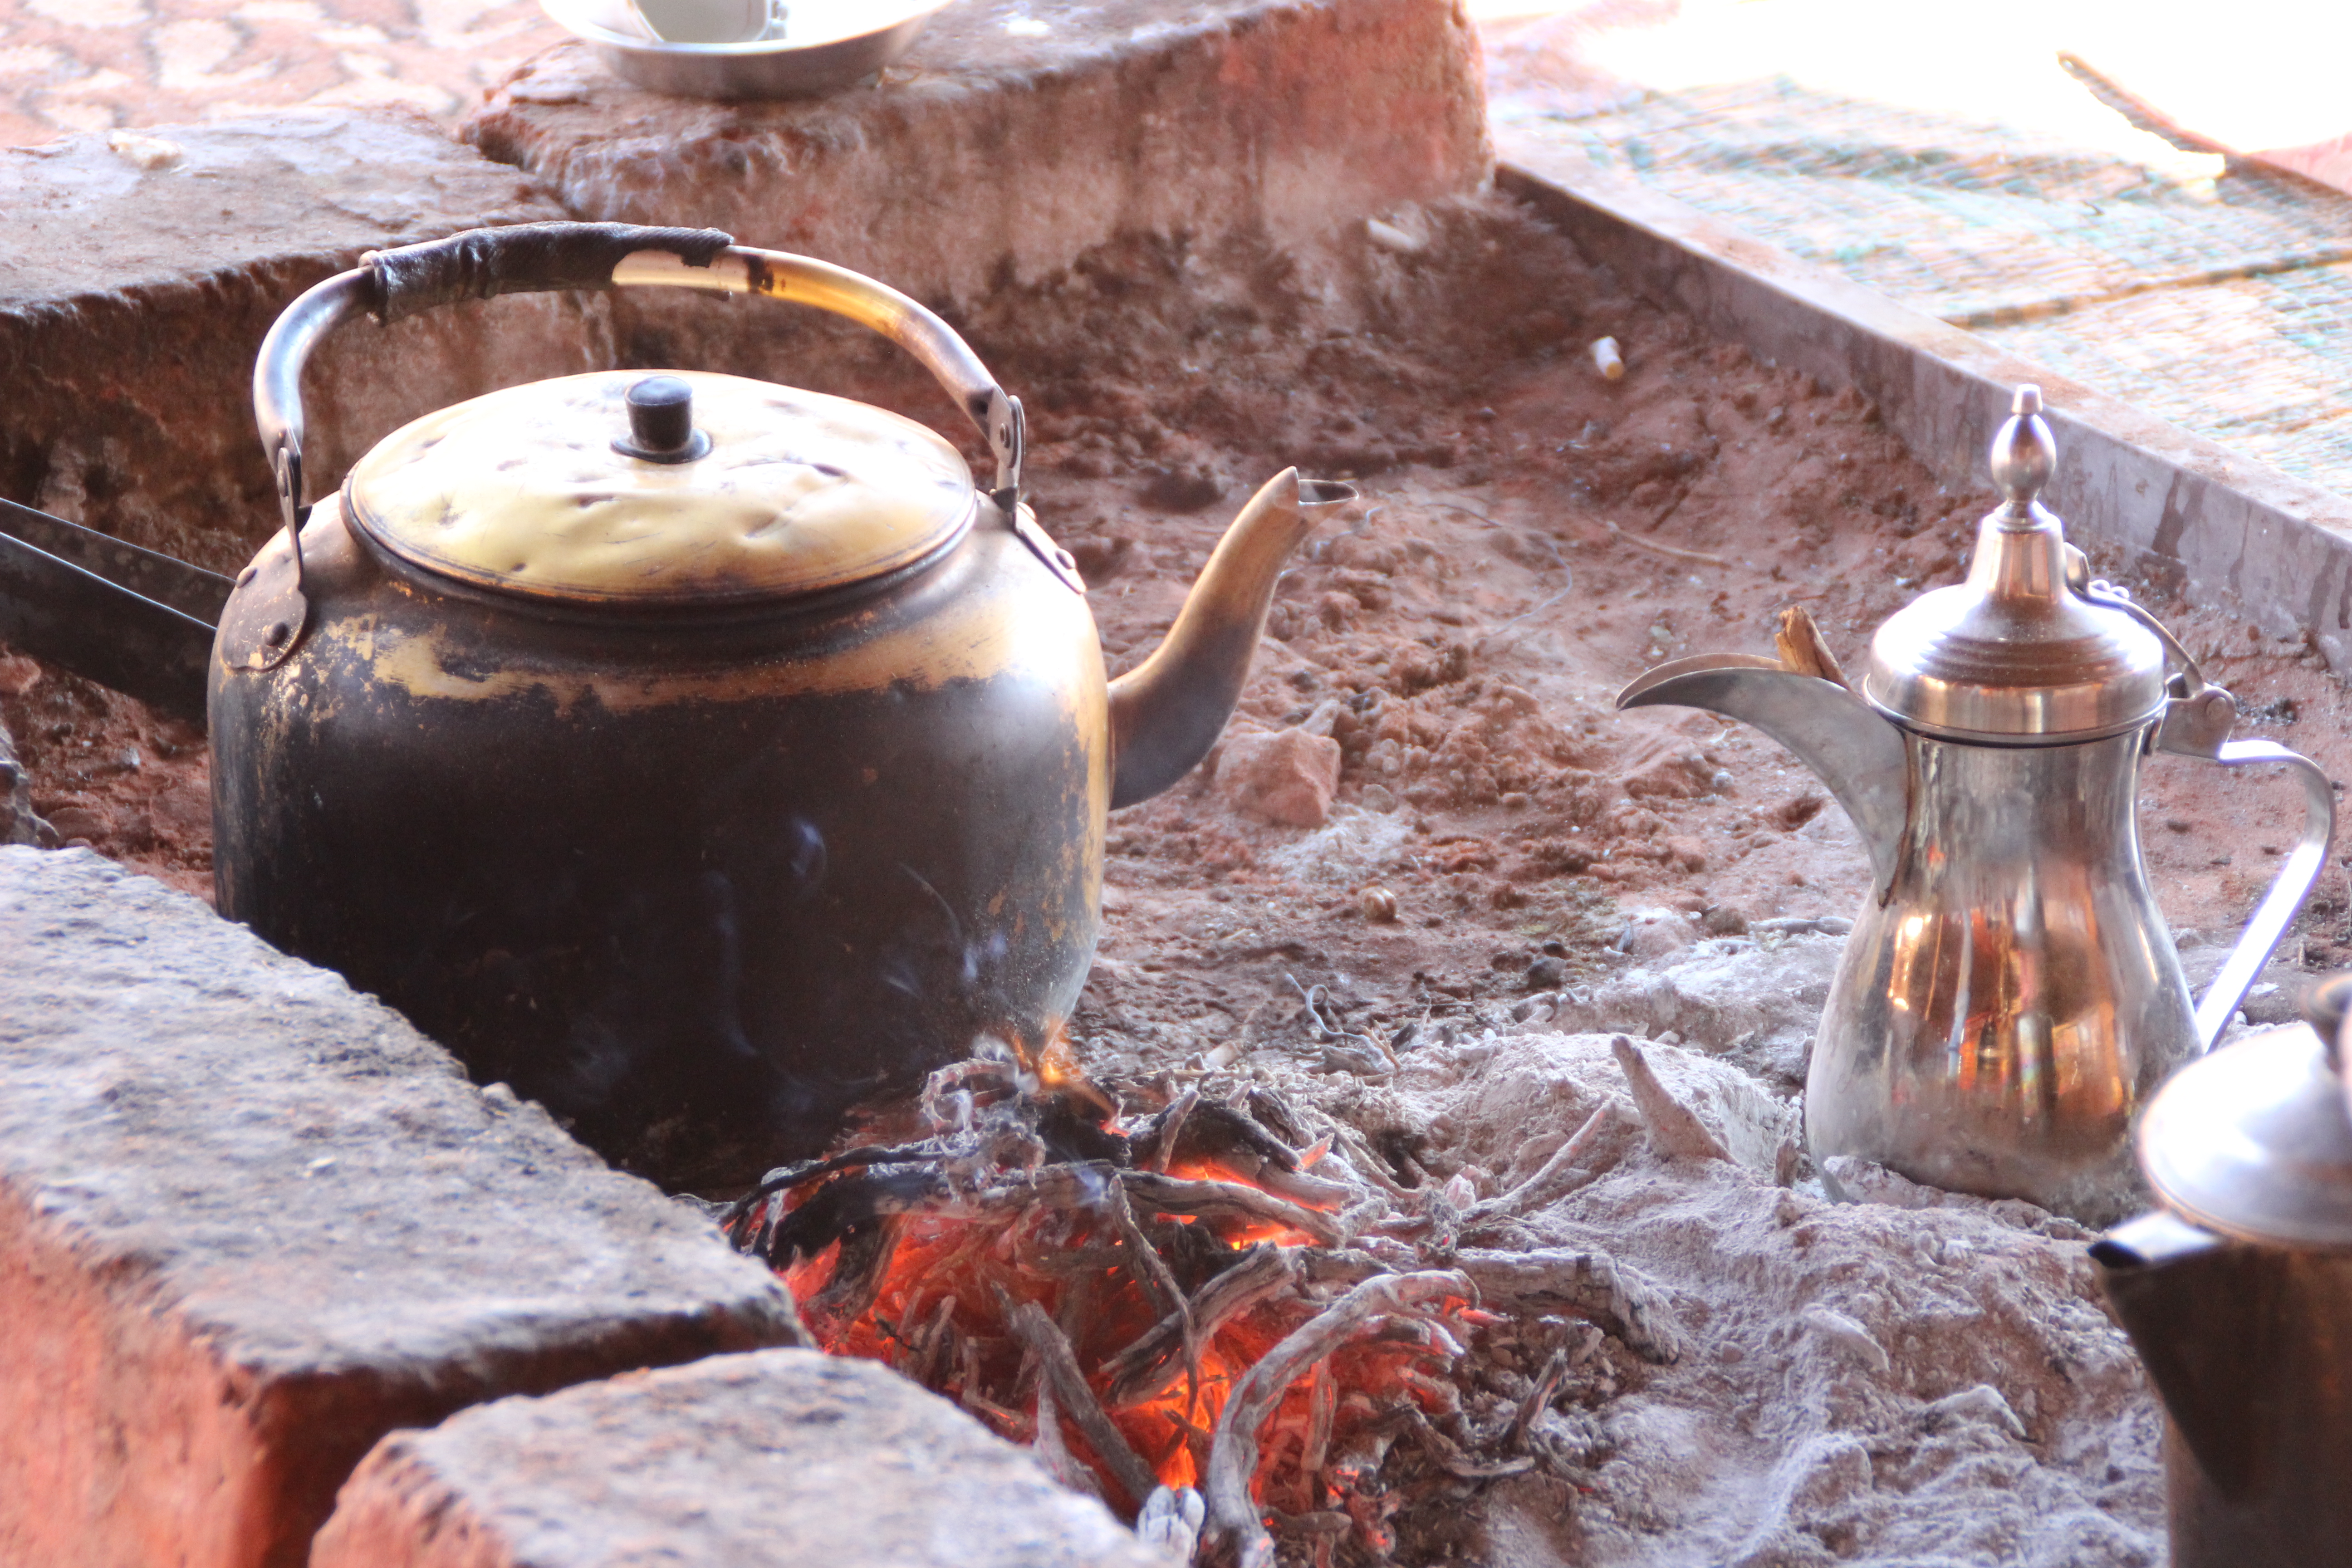 Bedouin tea